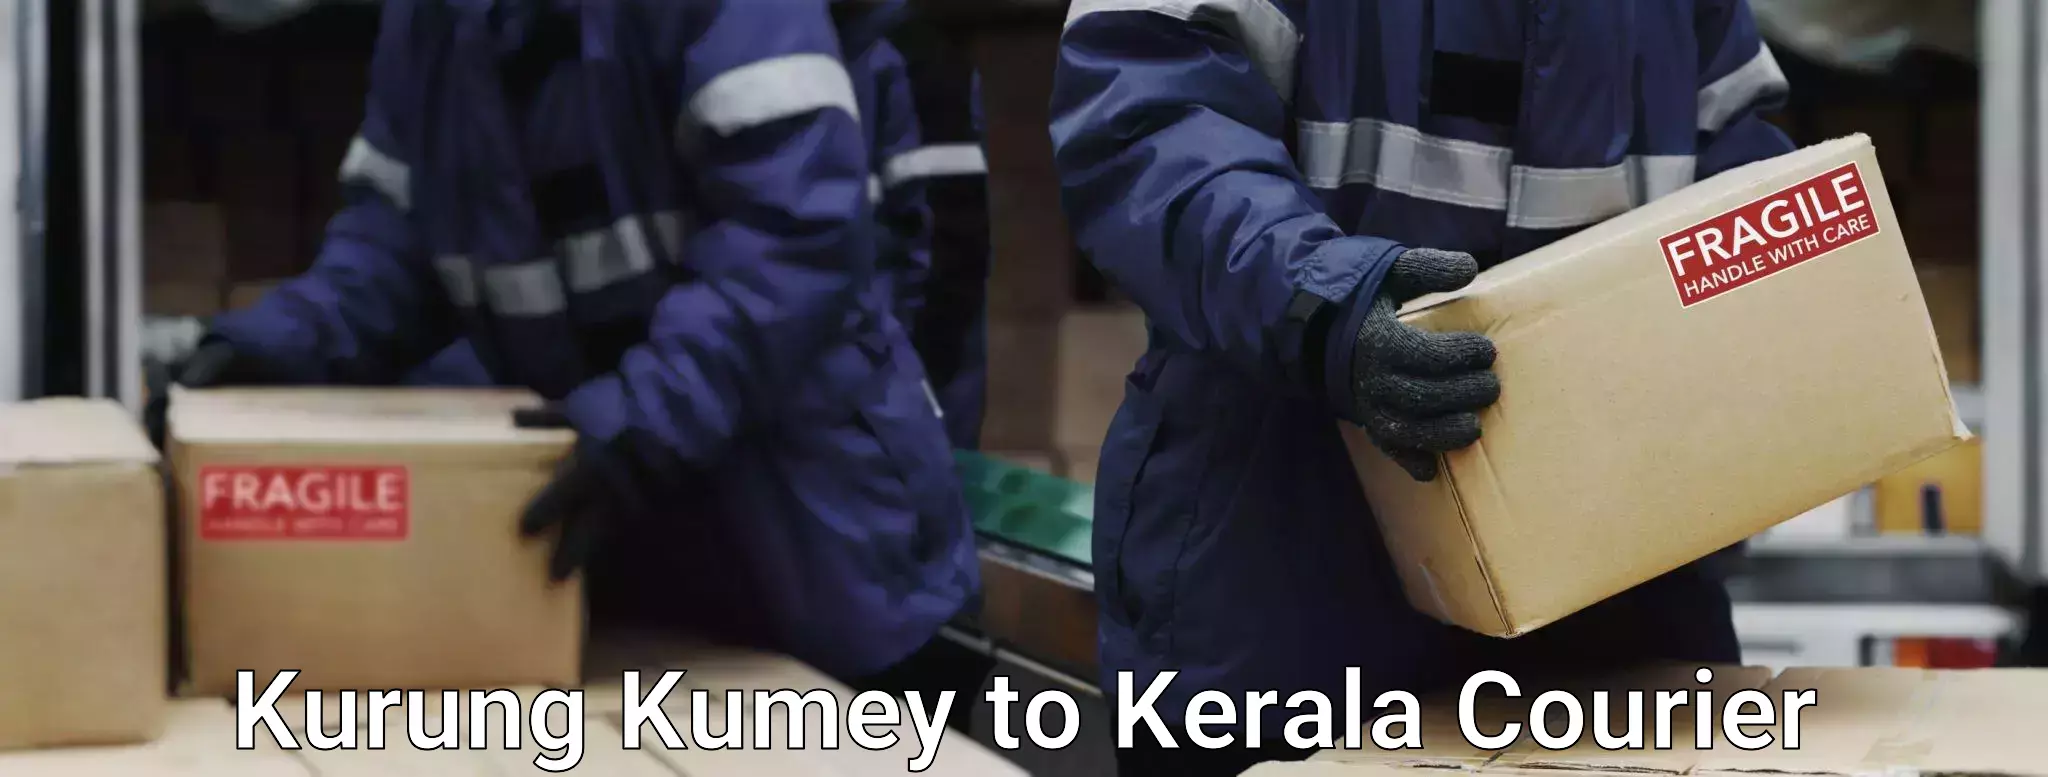 Luggage delivery operations Kurung Kumey to Kattappana